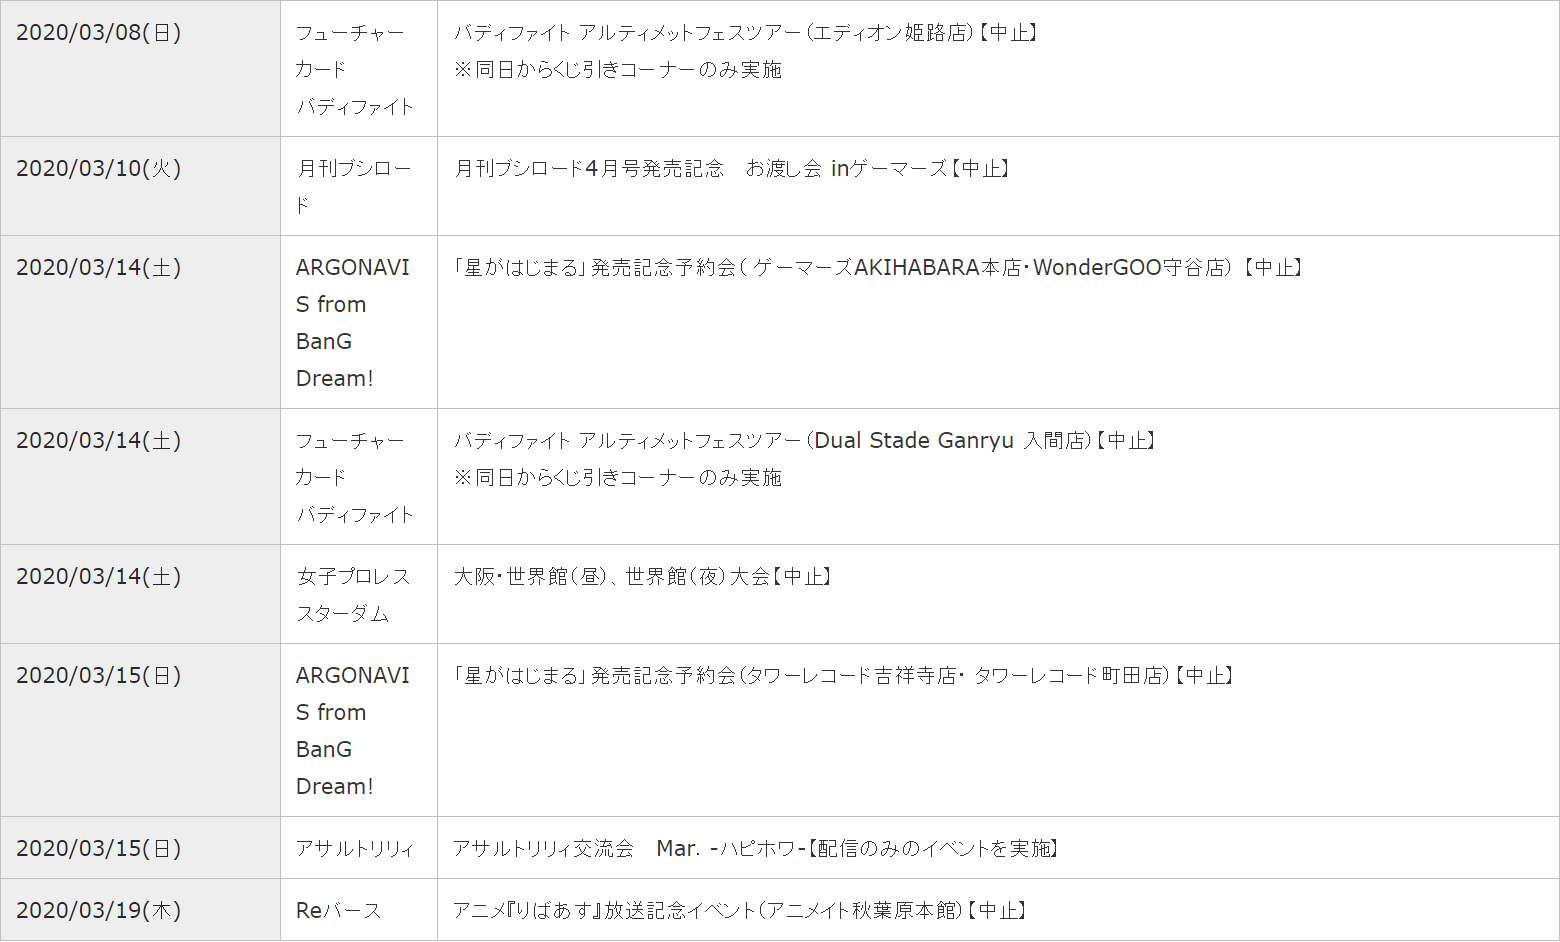 日本Bushiroad决定取消或者推迟3月20日之前所有线下活动